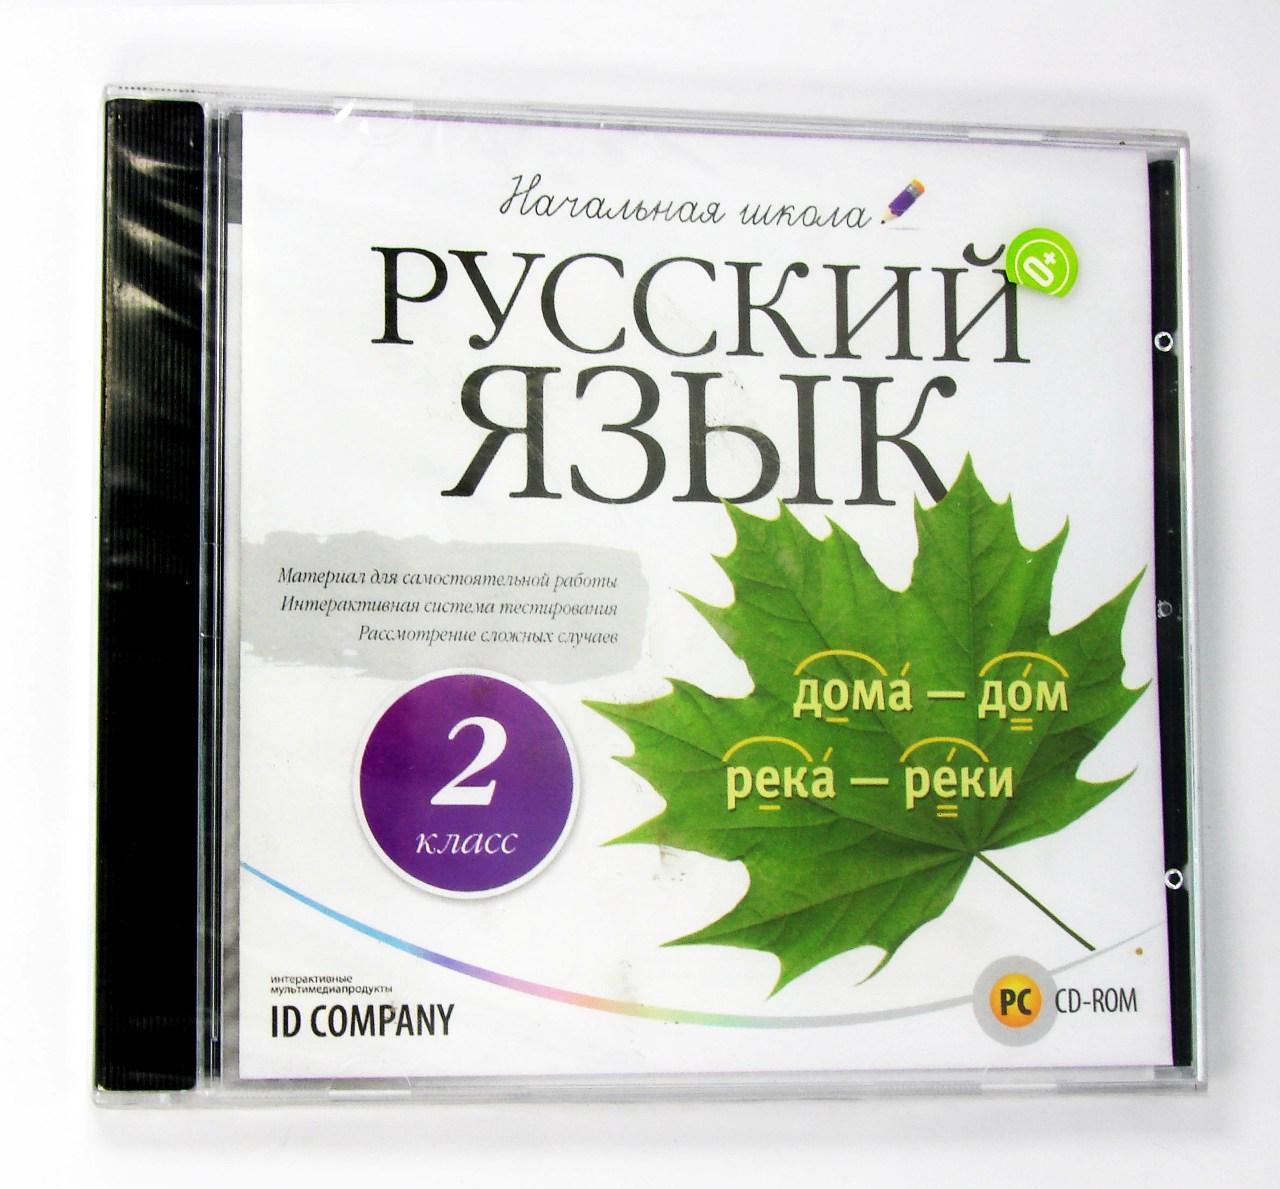 Компьютерный компакт-диск Русский язык. Начальная школа. 2 класс (ПК), фирма "Новый Диск", 1CD